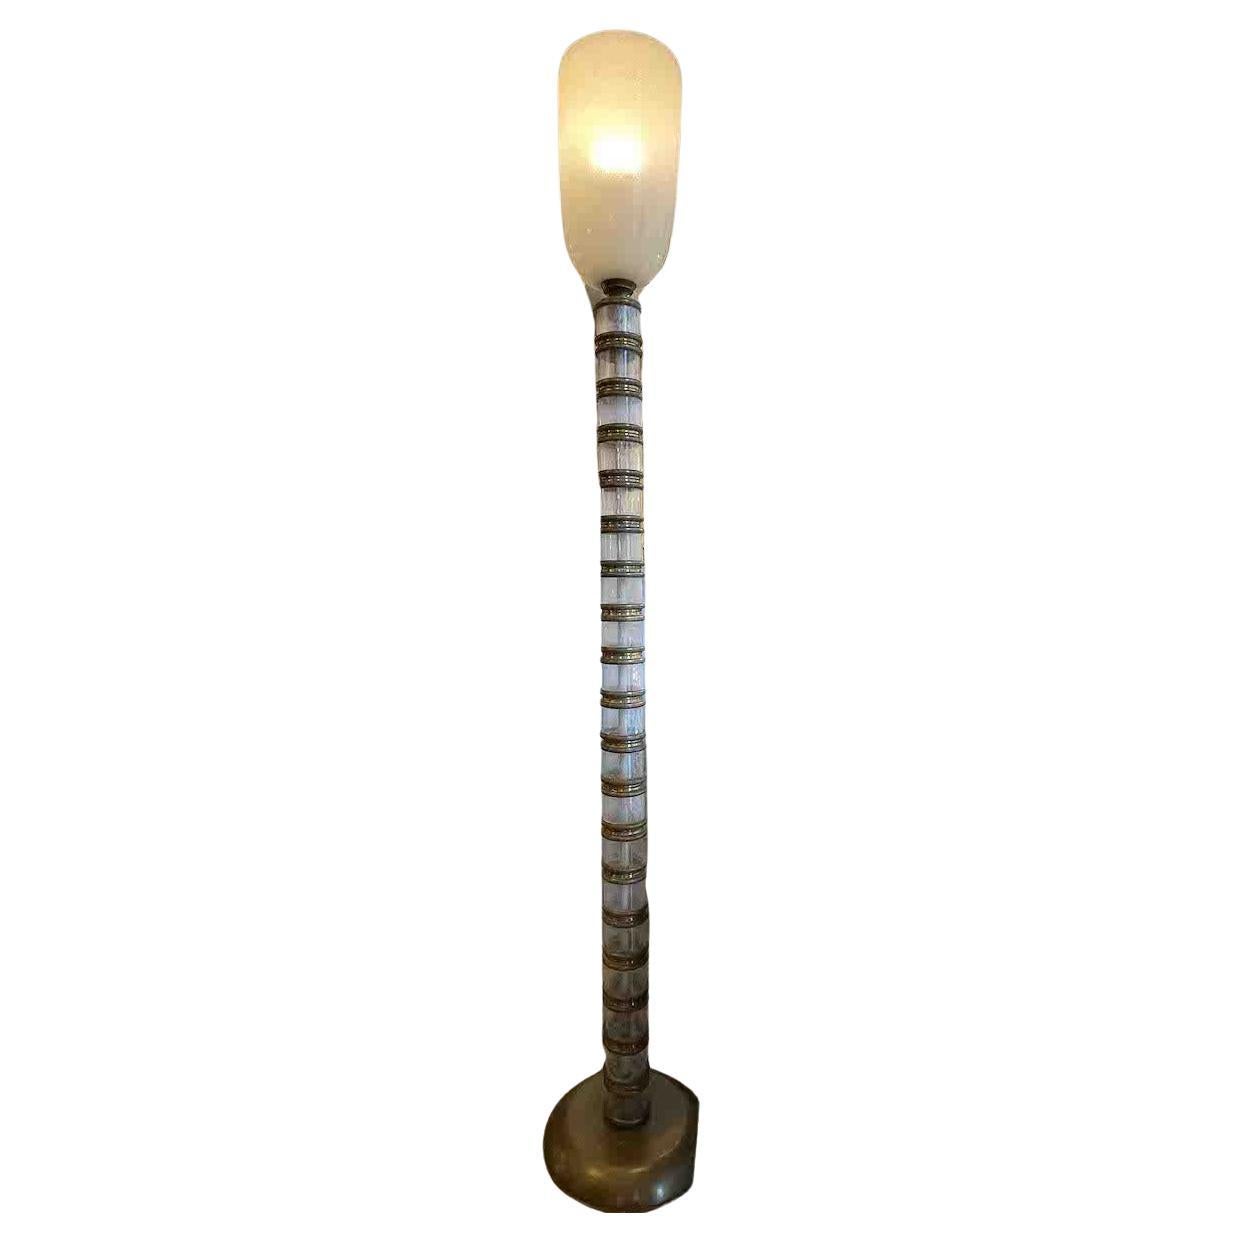 Venini 1930, lampadaire en verre Pulegoso et laiton.
La base de la lampe a été produite en laiton patiné et a été réalisée par Martinuzzi pour Venini.

Le verre Pulegoso est rempli de bulles obtenues par l'introduction dans la masse en fusion d'une